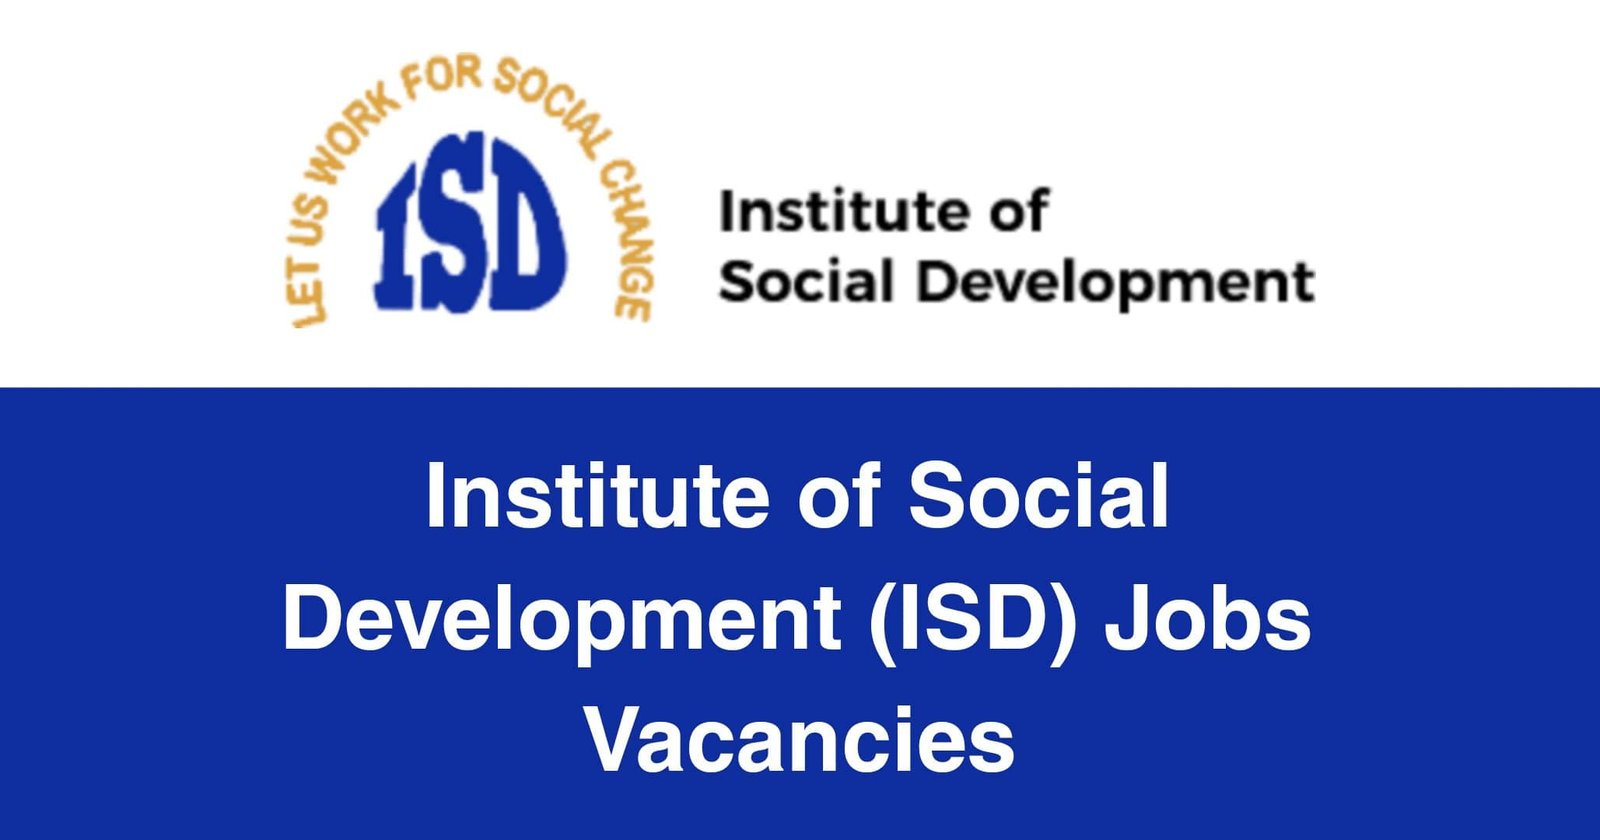 Institute of Social Development (ISD) Jobs Vacancies